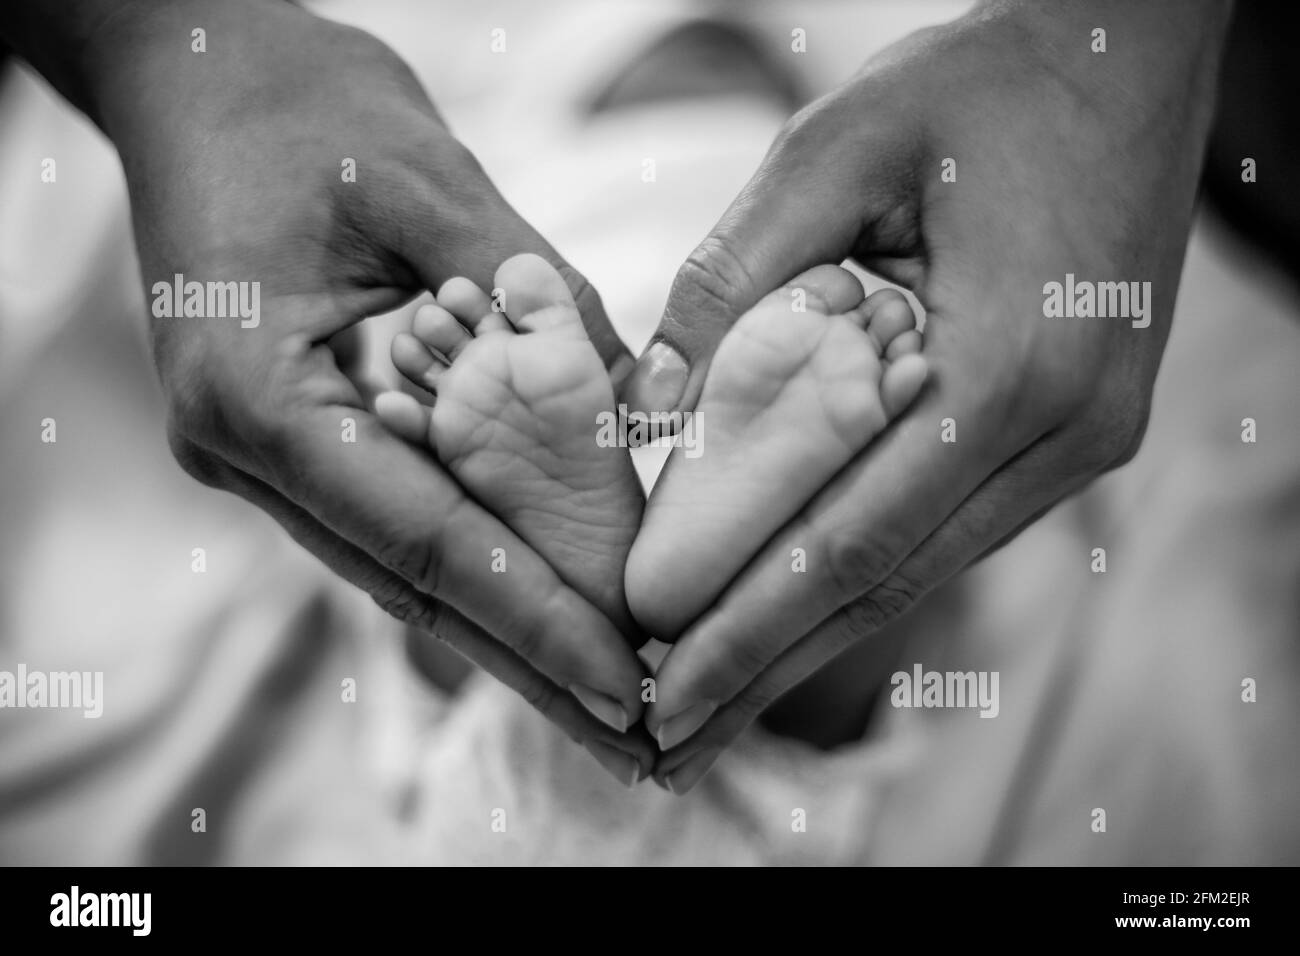 Les pieds de bébé nouveau-né dans les mains de sa mère en forme de coeur. Mère montrant son amour et son affection. Noir et blanc Banque D'Images